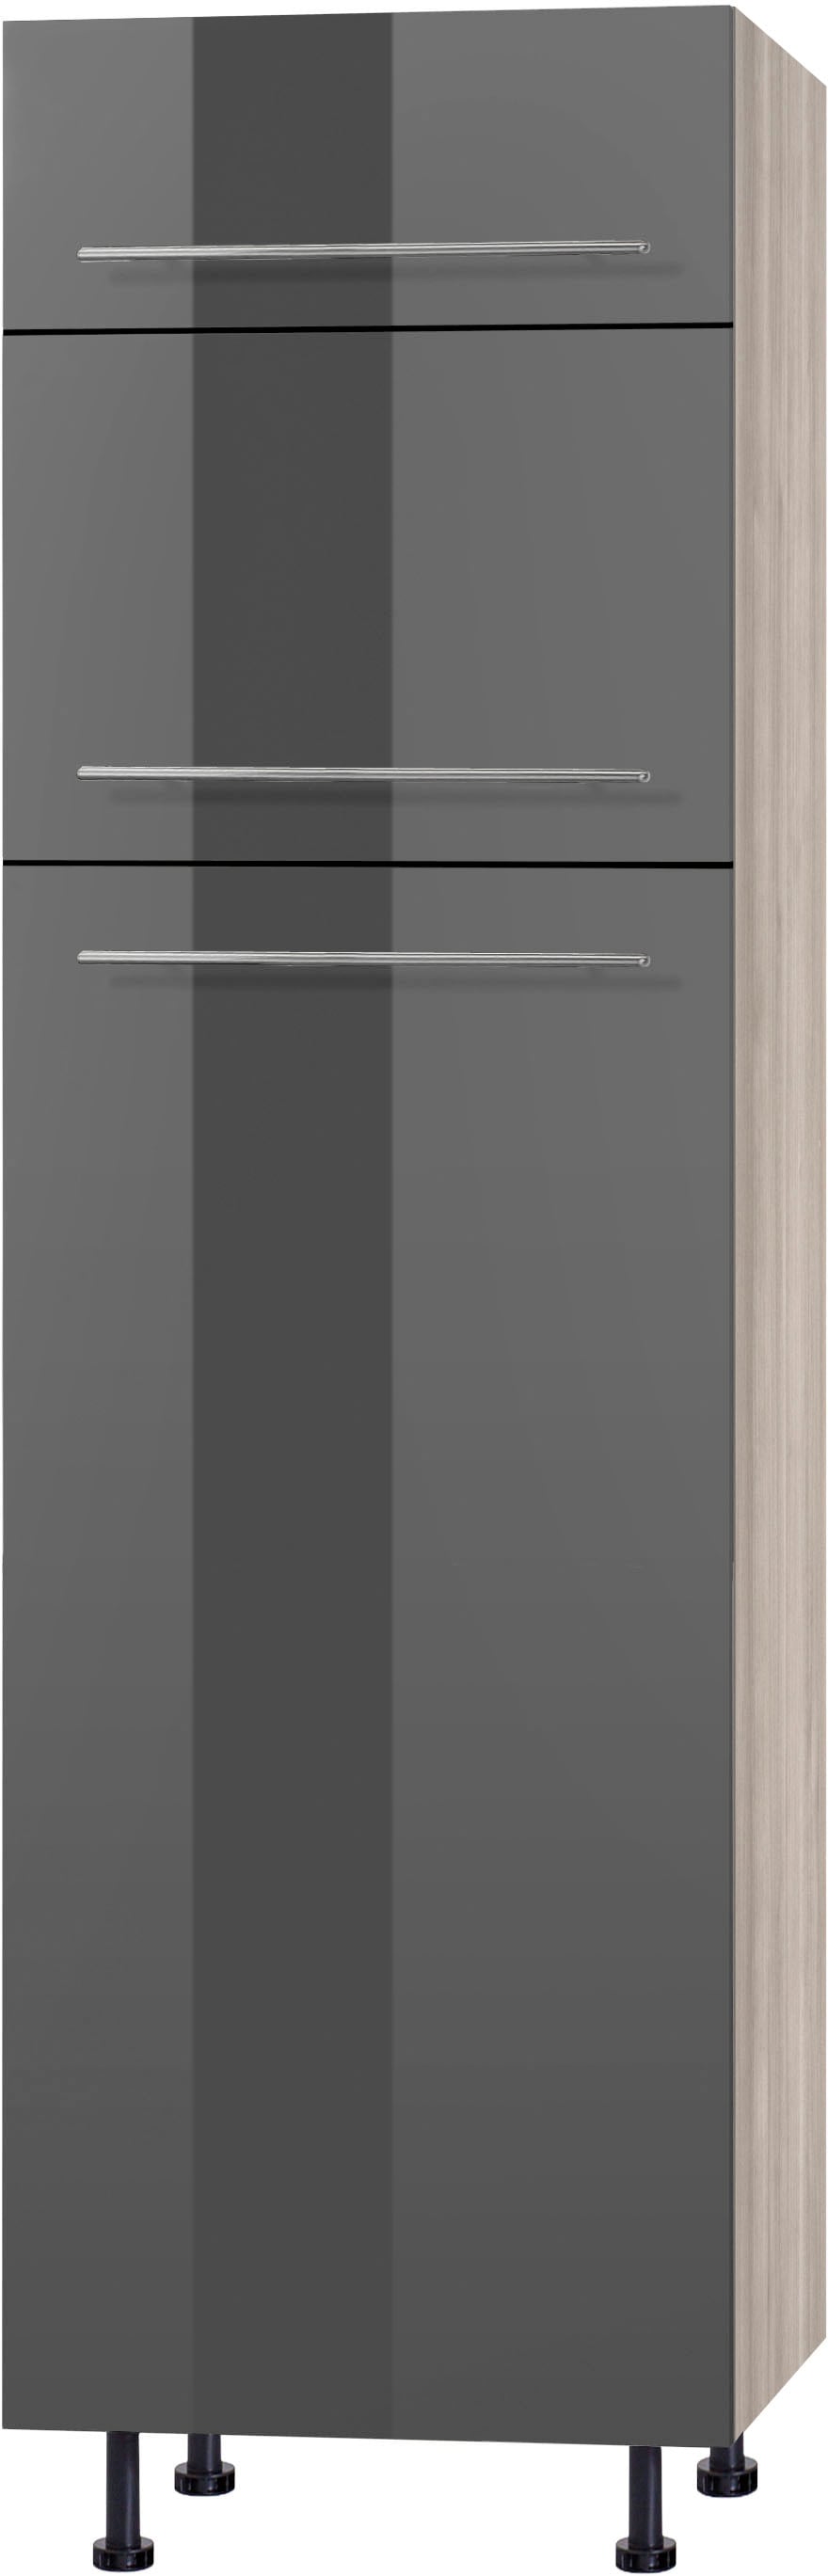 OPTIFIT Kühlumbauschrank "Bern", 60 cm breit, 212 cm hoch, mit höhenverstellbaren Stellfüßen